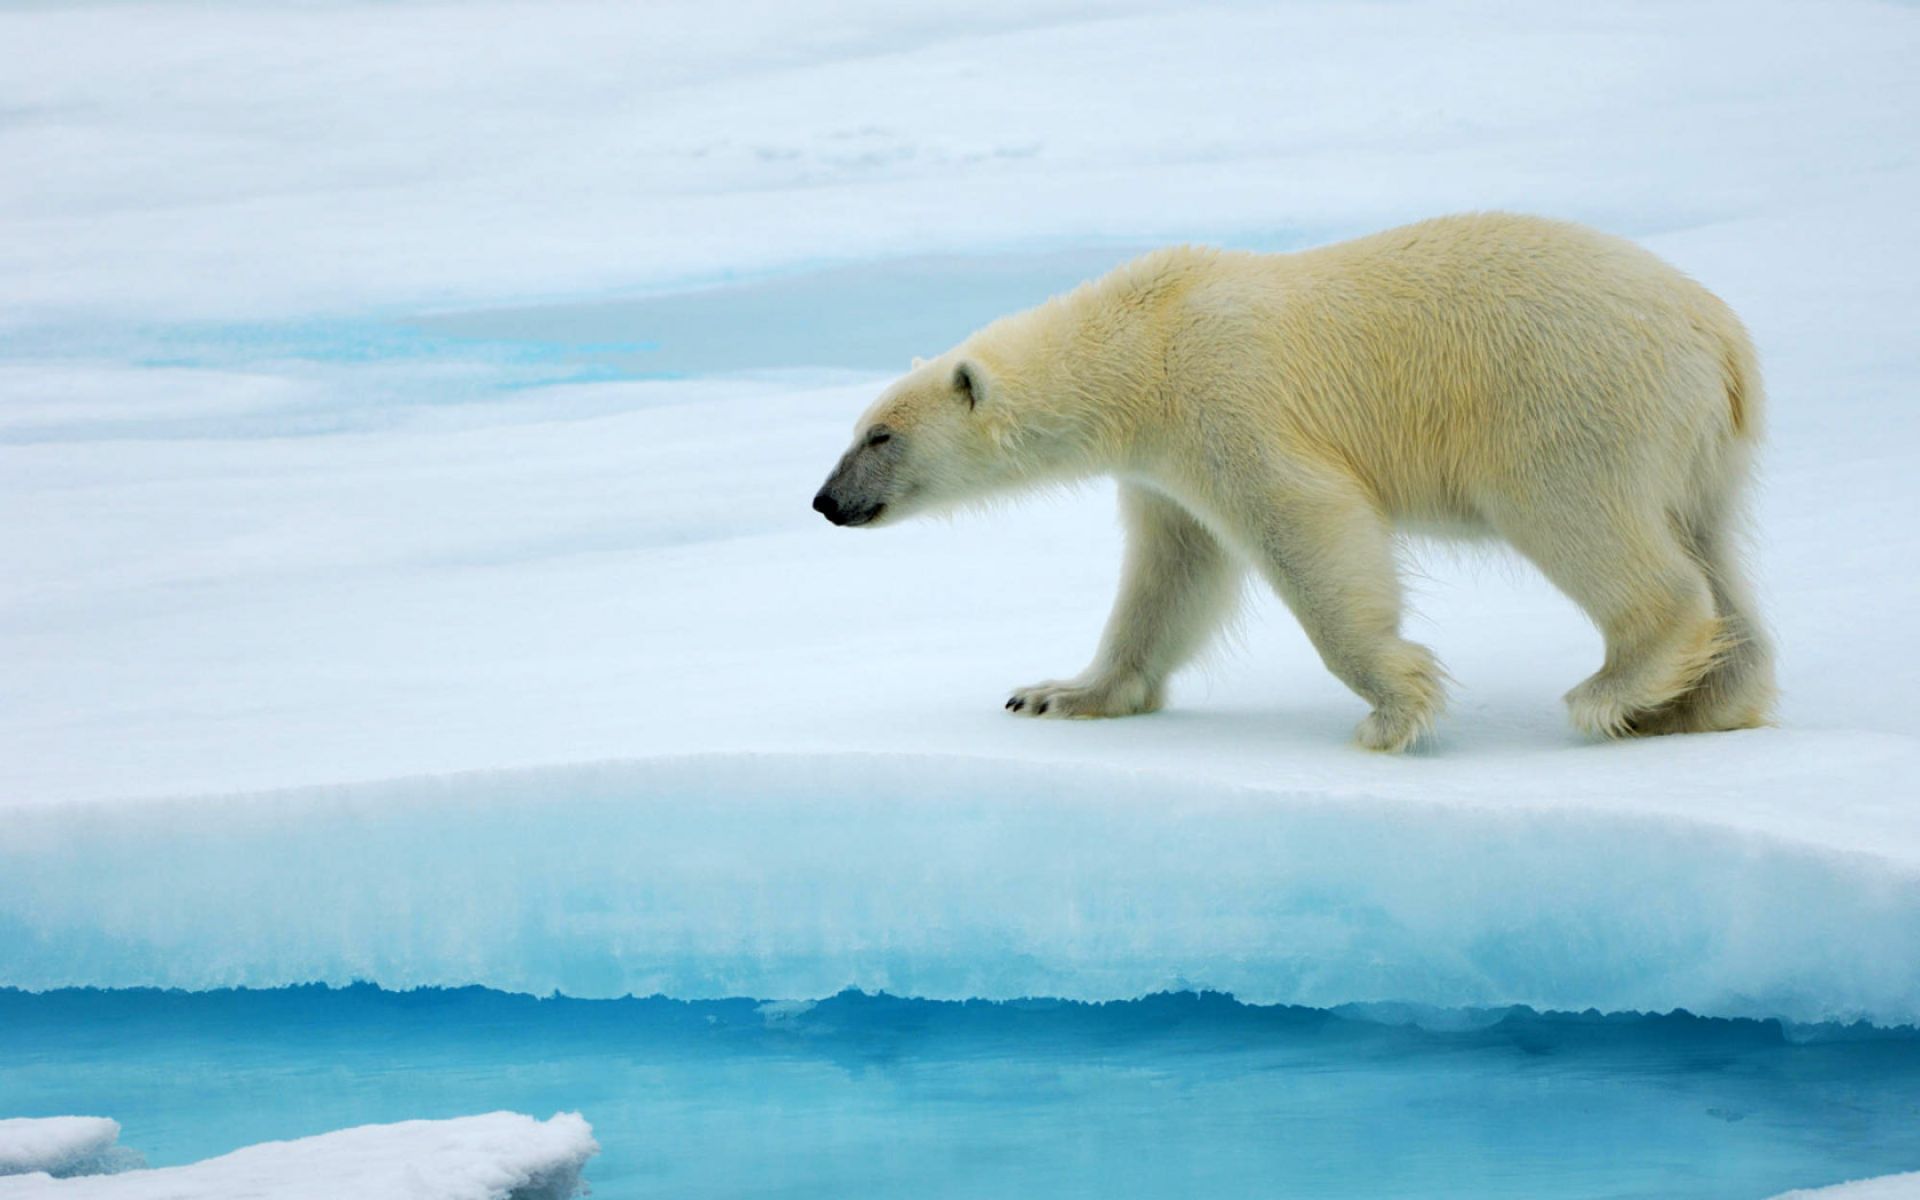 27 февраля – Международный день полярного медведя